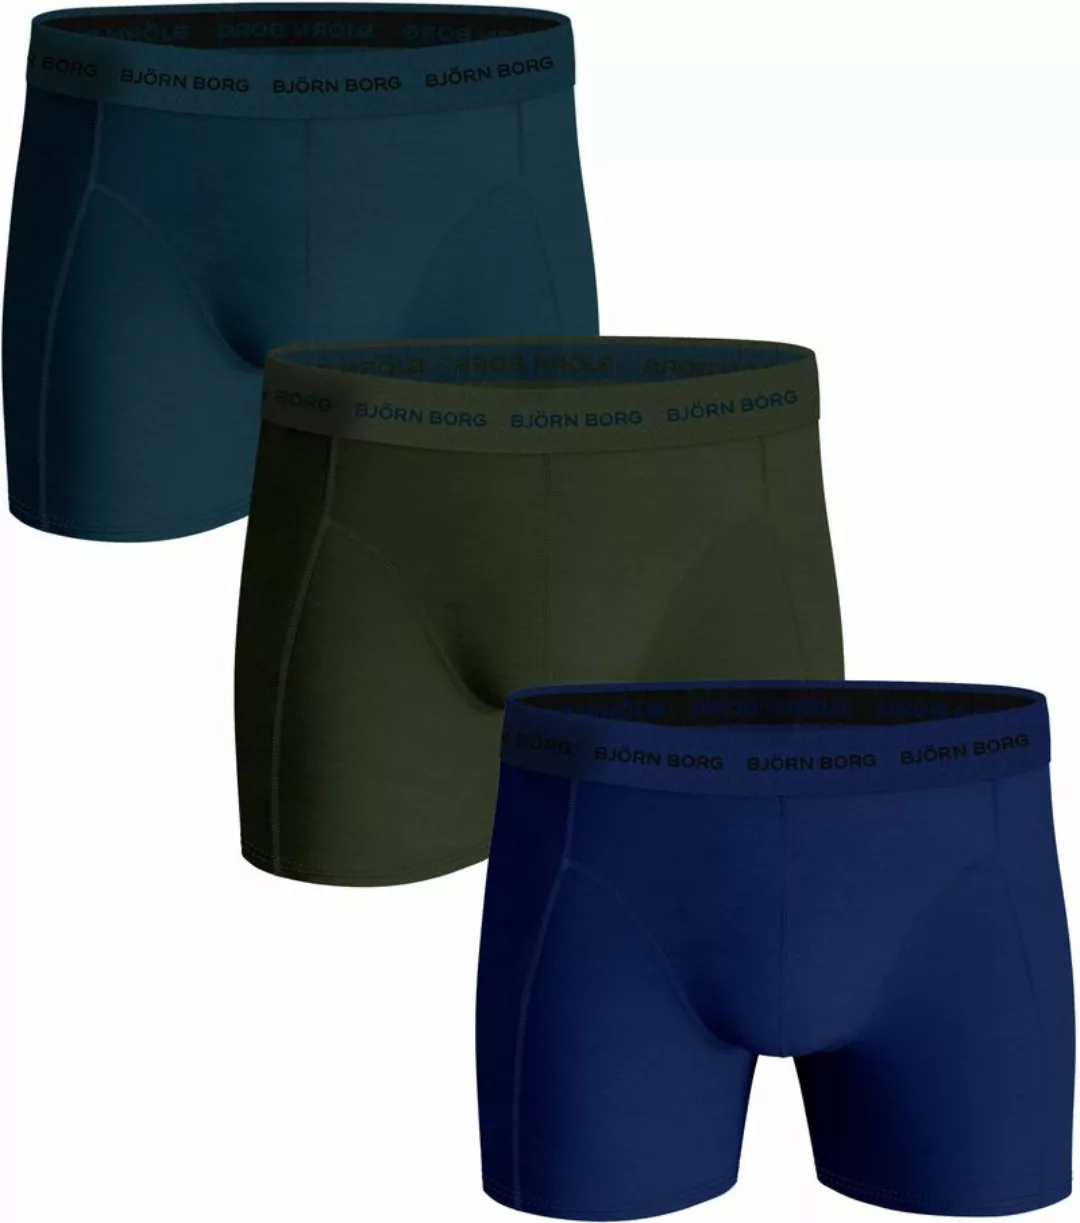 Bjorn Borg Boxers Cotton Stretch 3 Pack Multicolour - Größe M günstig online kaufen